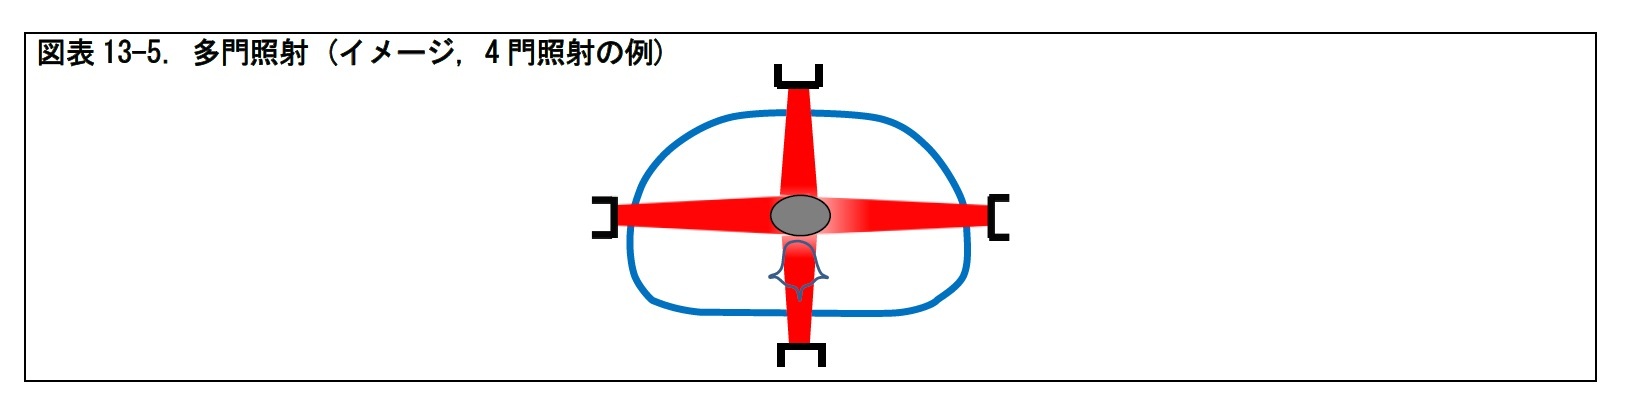 図表13-5. 多門照射 (イメージ, 4 門照射の例)